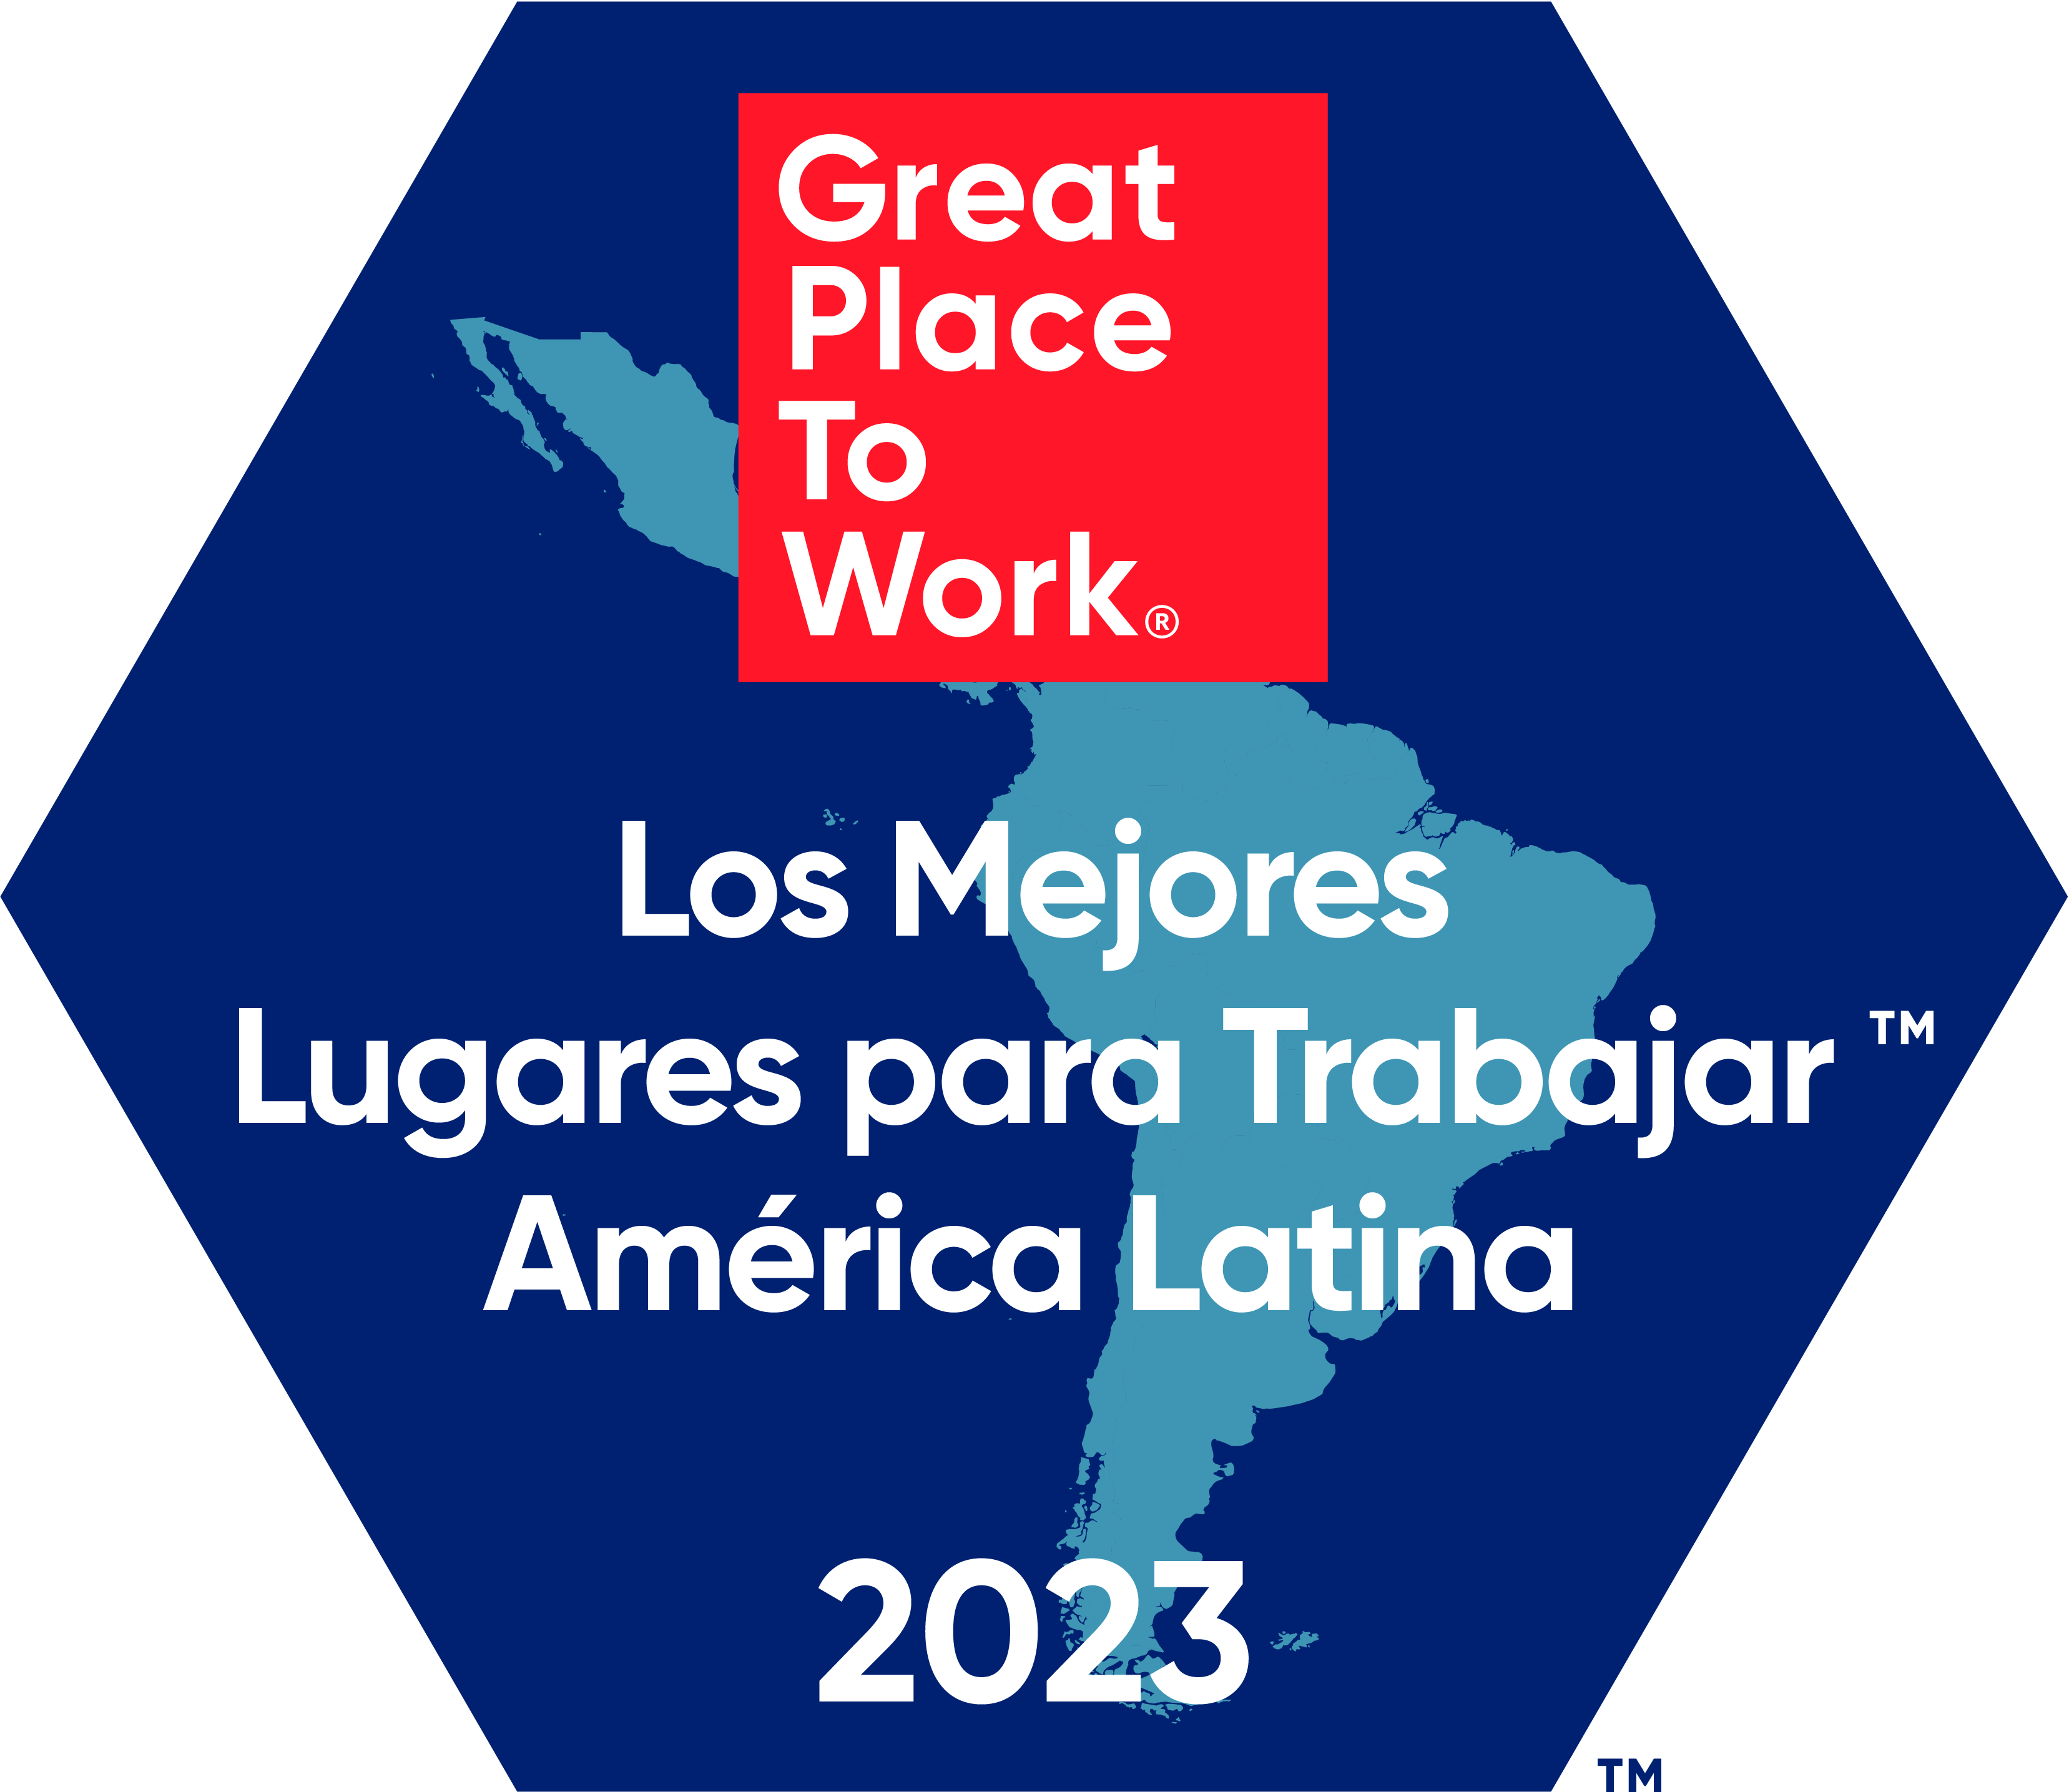 los mejores lugares para trabajar américa latina 2022